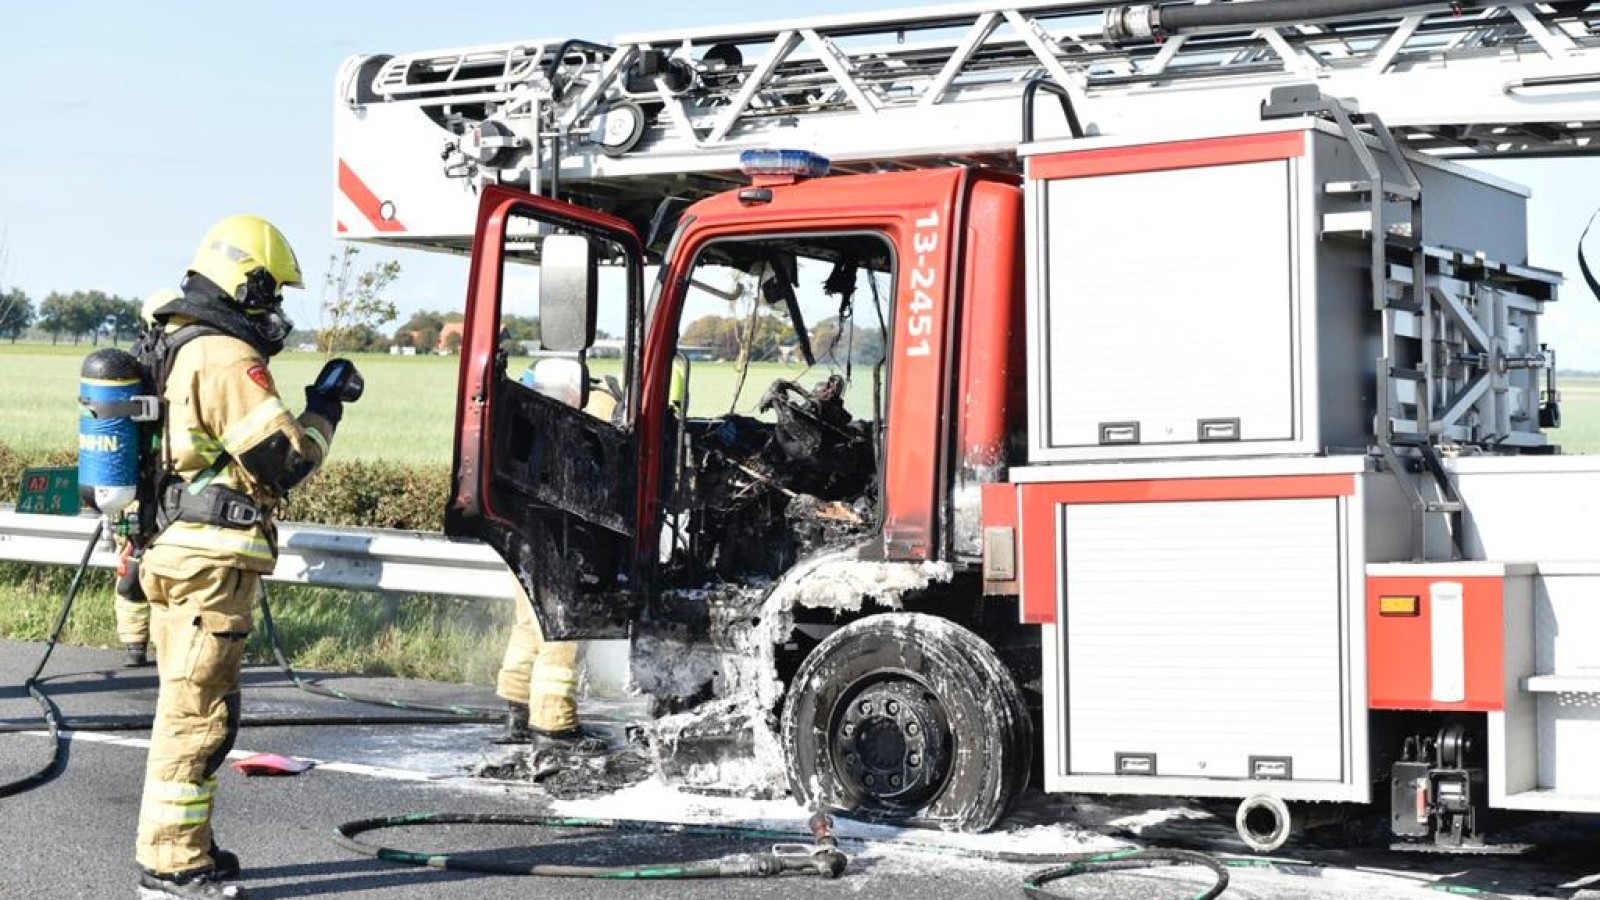 ladderwagen brandweer vliegt in brand